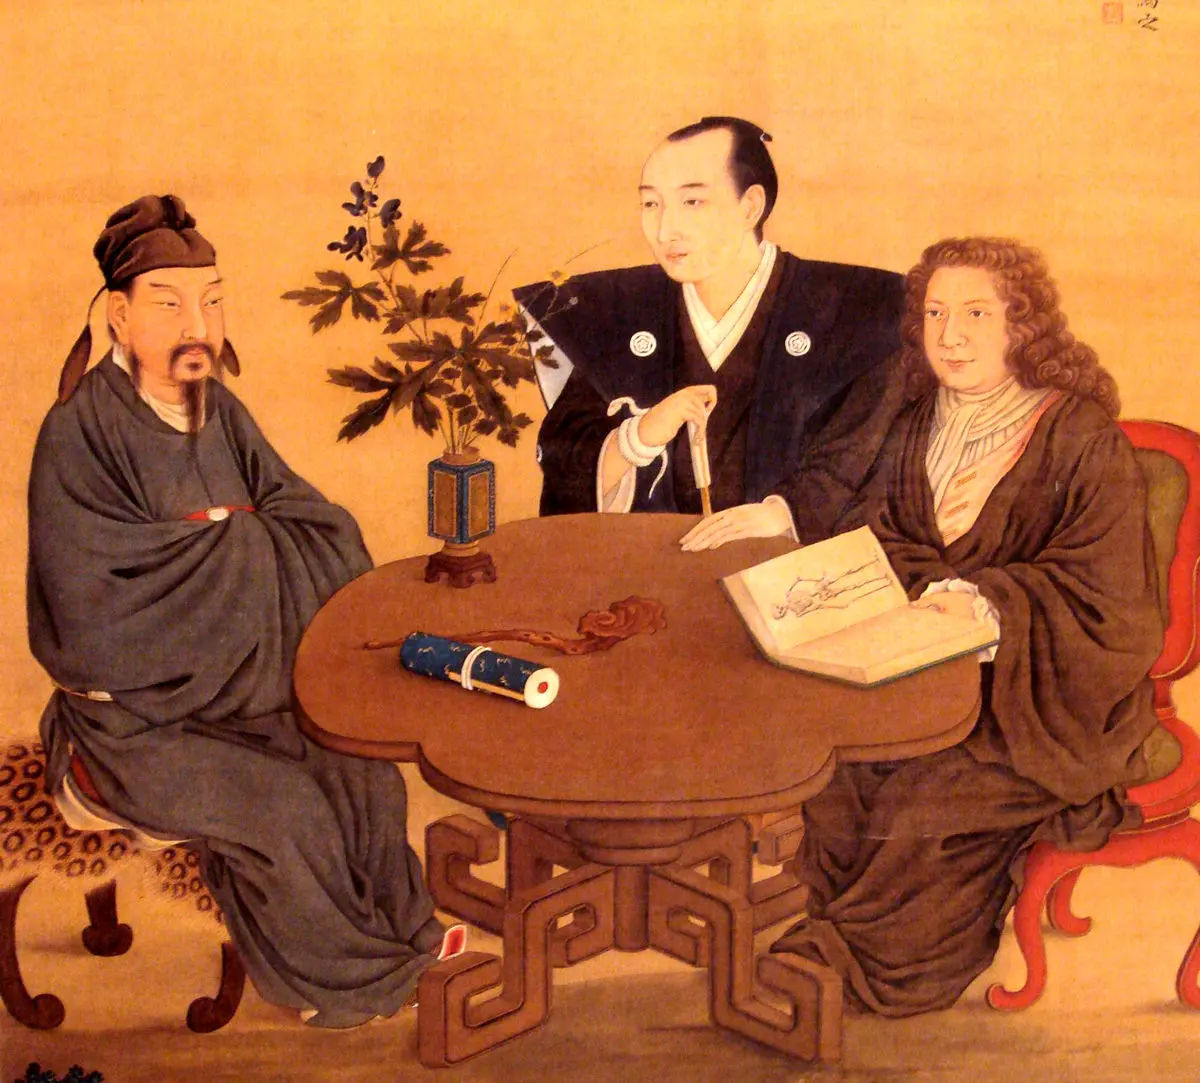 معرفی شش کتاب بنیادی برای شناخت فرهنگ و فلسفۀ ژاپنی